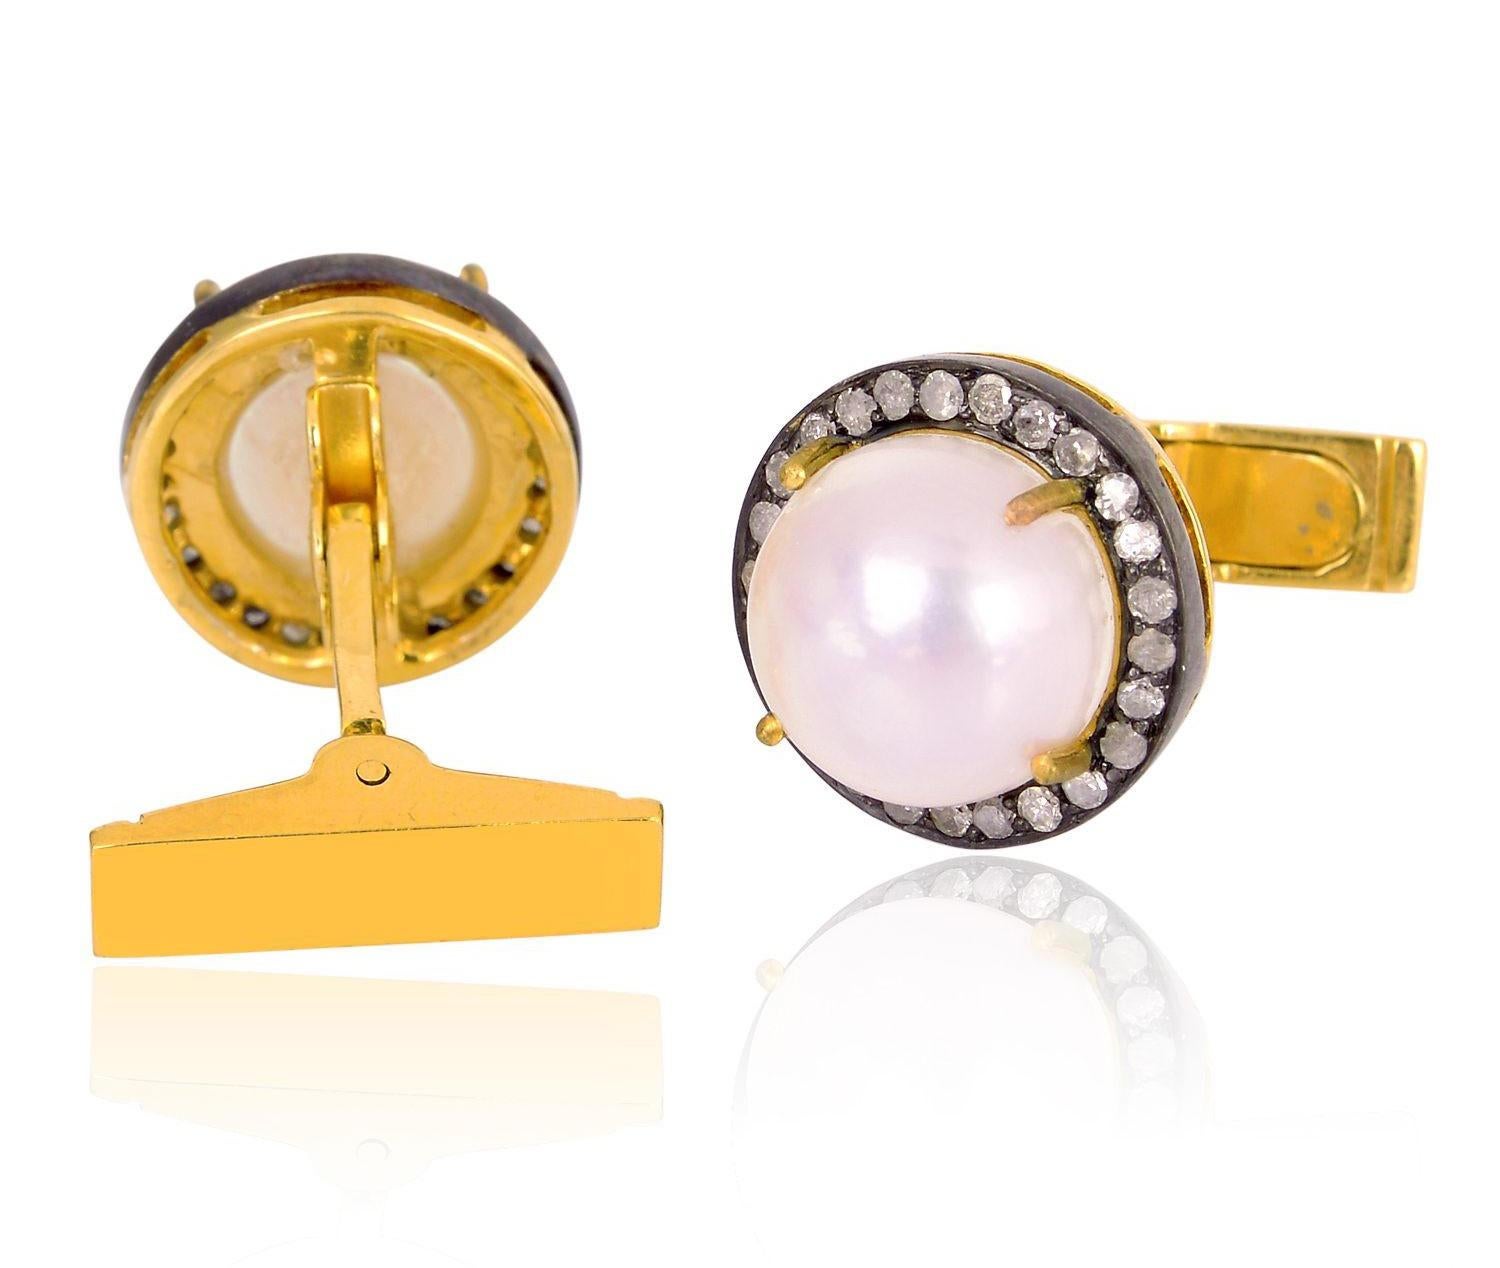 Fabriqués en or 18 carats et en argent sterling, ces boutons de manchette sont sertis à la main de 1,3 carat de perles et de 0,6 carat de diamants pavés en finition noircie.

SUIVRE  La vitrine de MEGHNA JEWELS pour découvrir la dernière collection